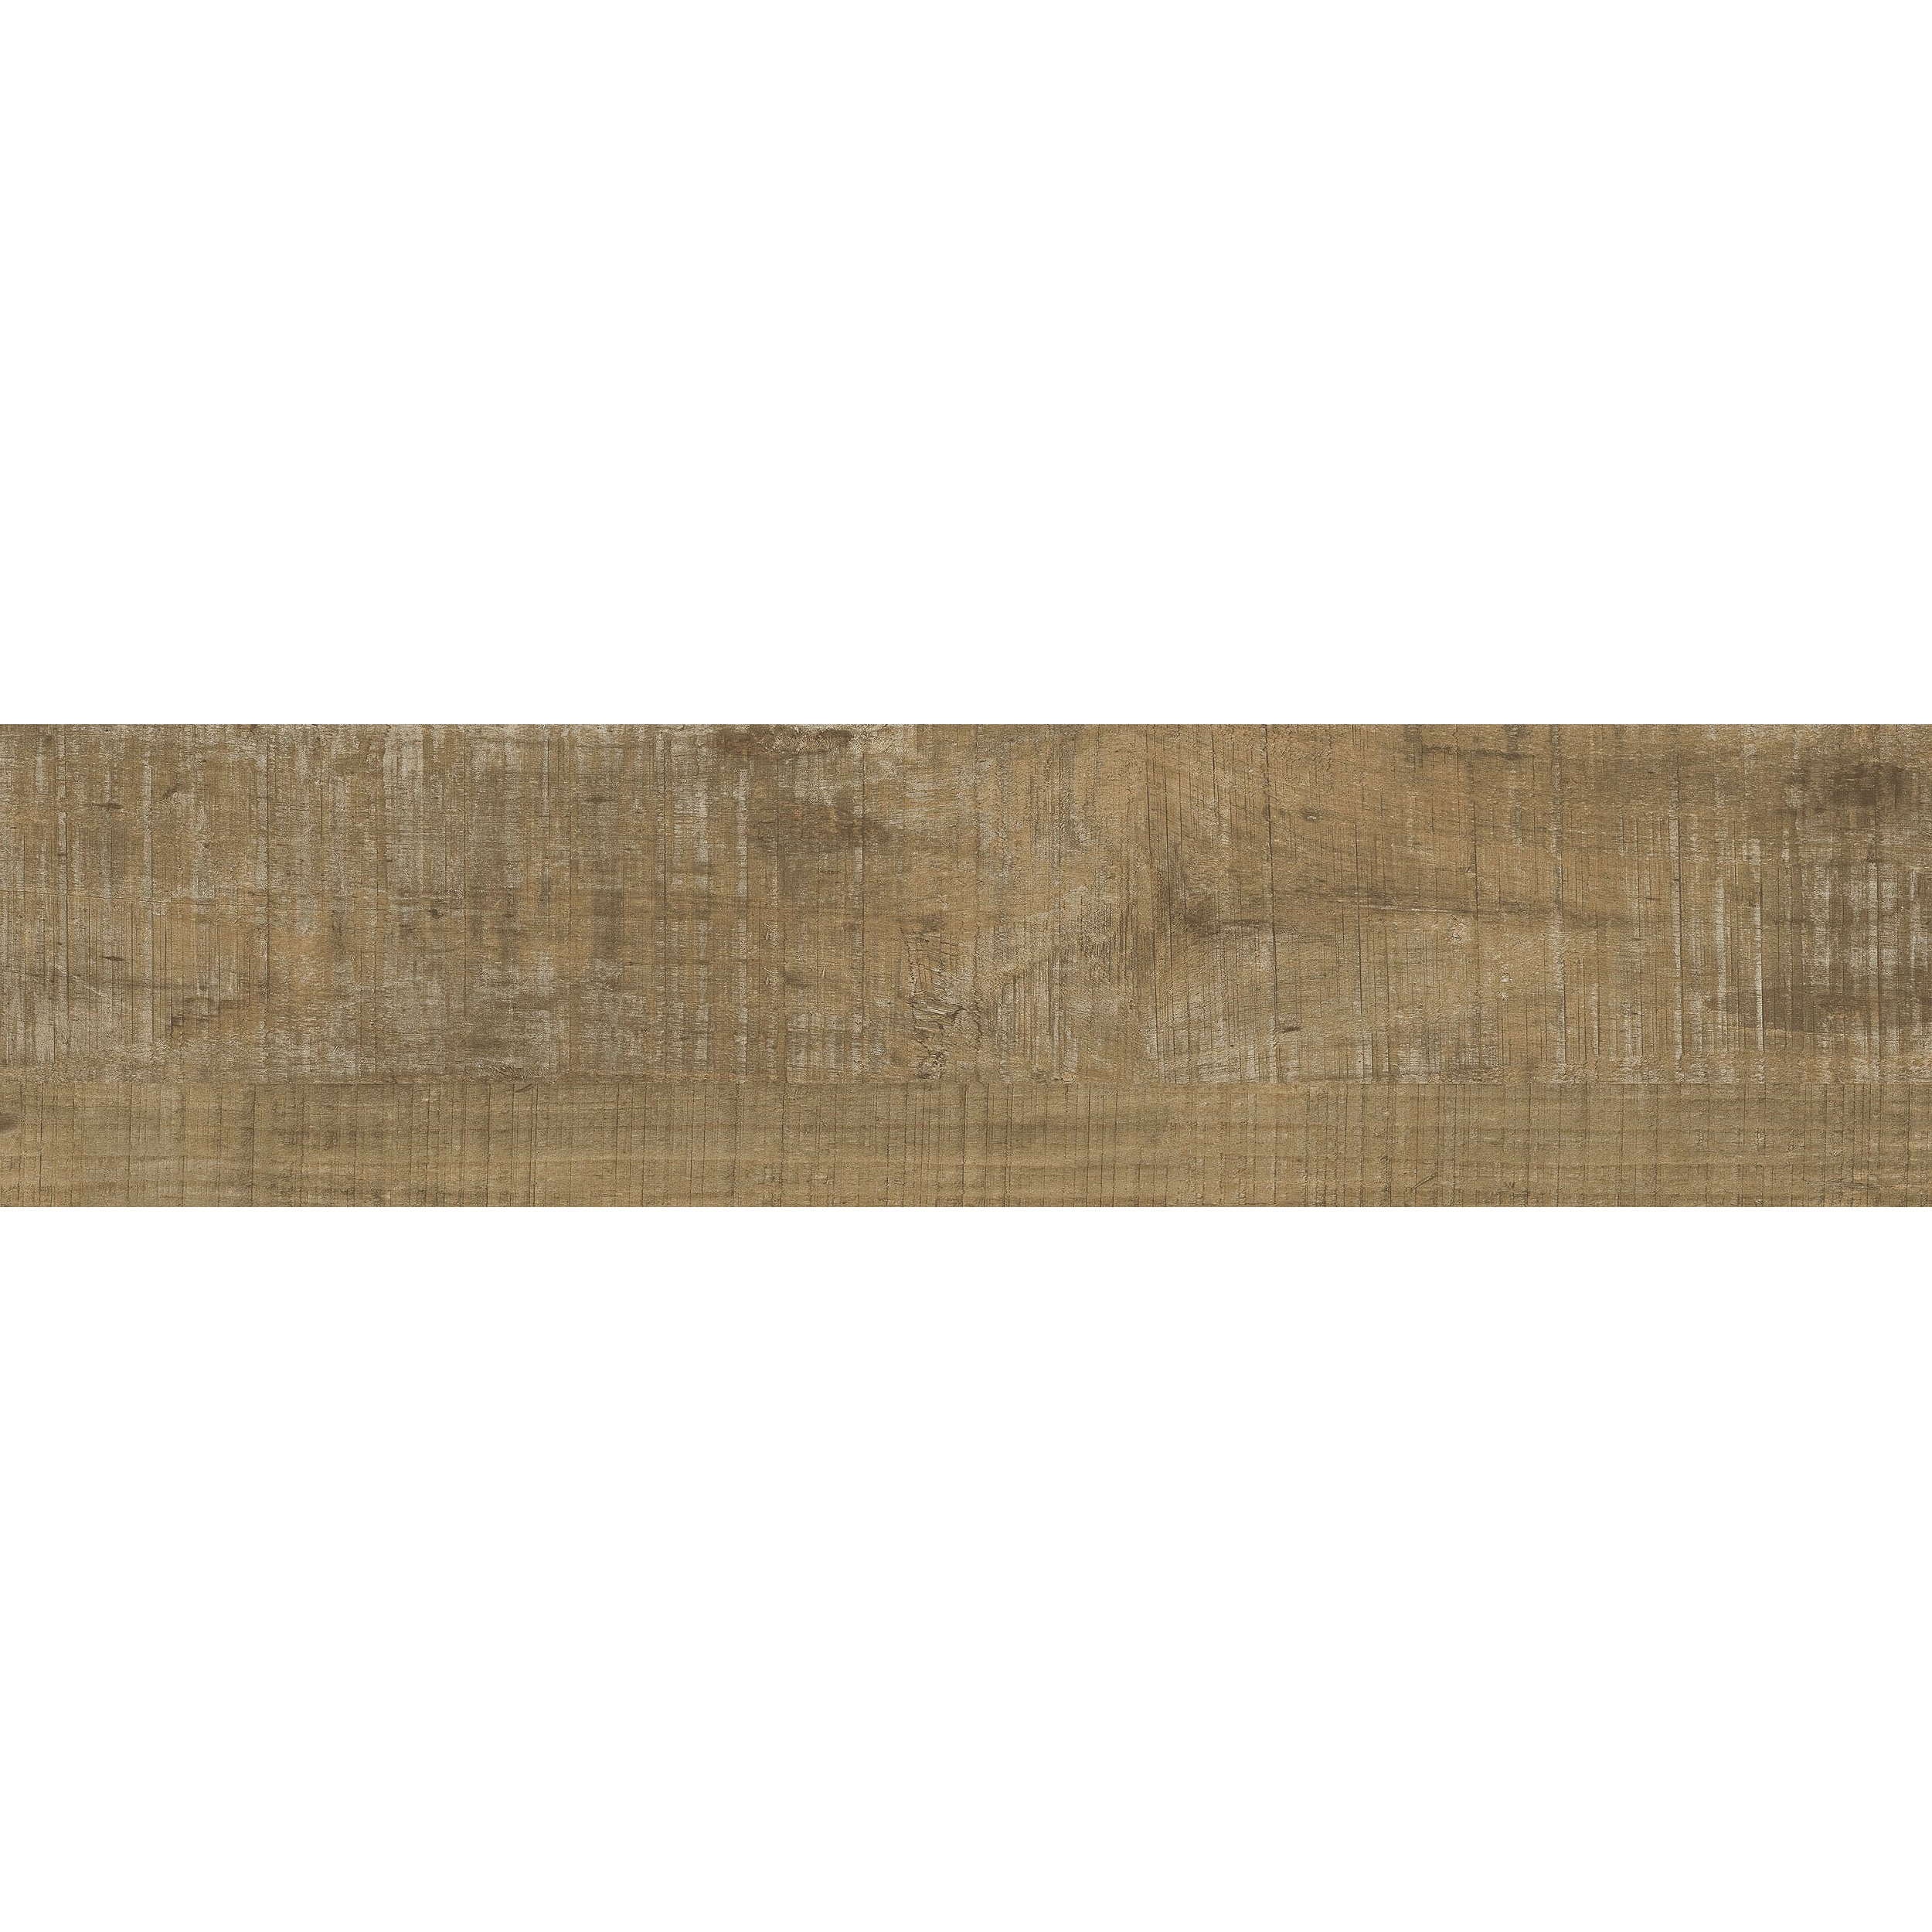 Textured Woodgrains LVT In Distressed Hickory Bildnummer 11